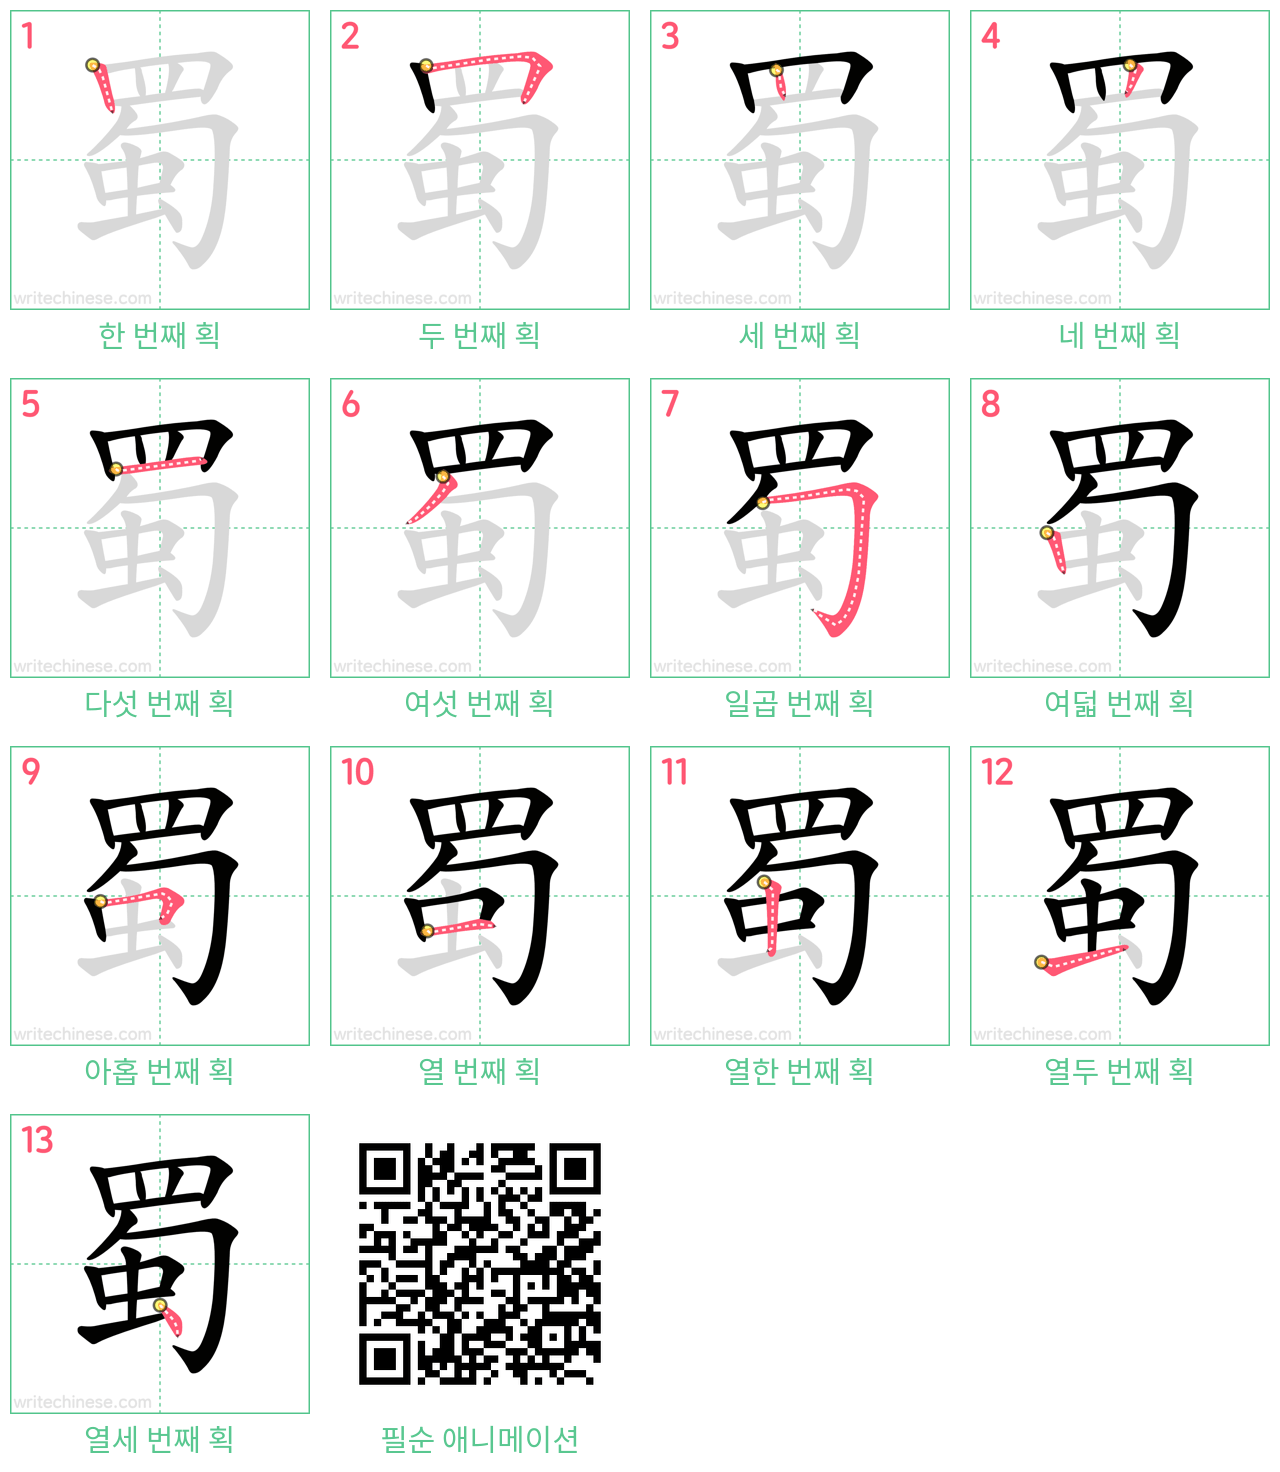 蜀 step-by-step stroke order diagrams